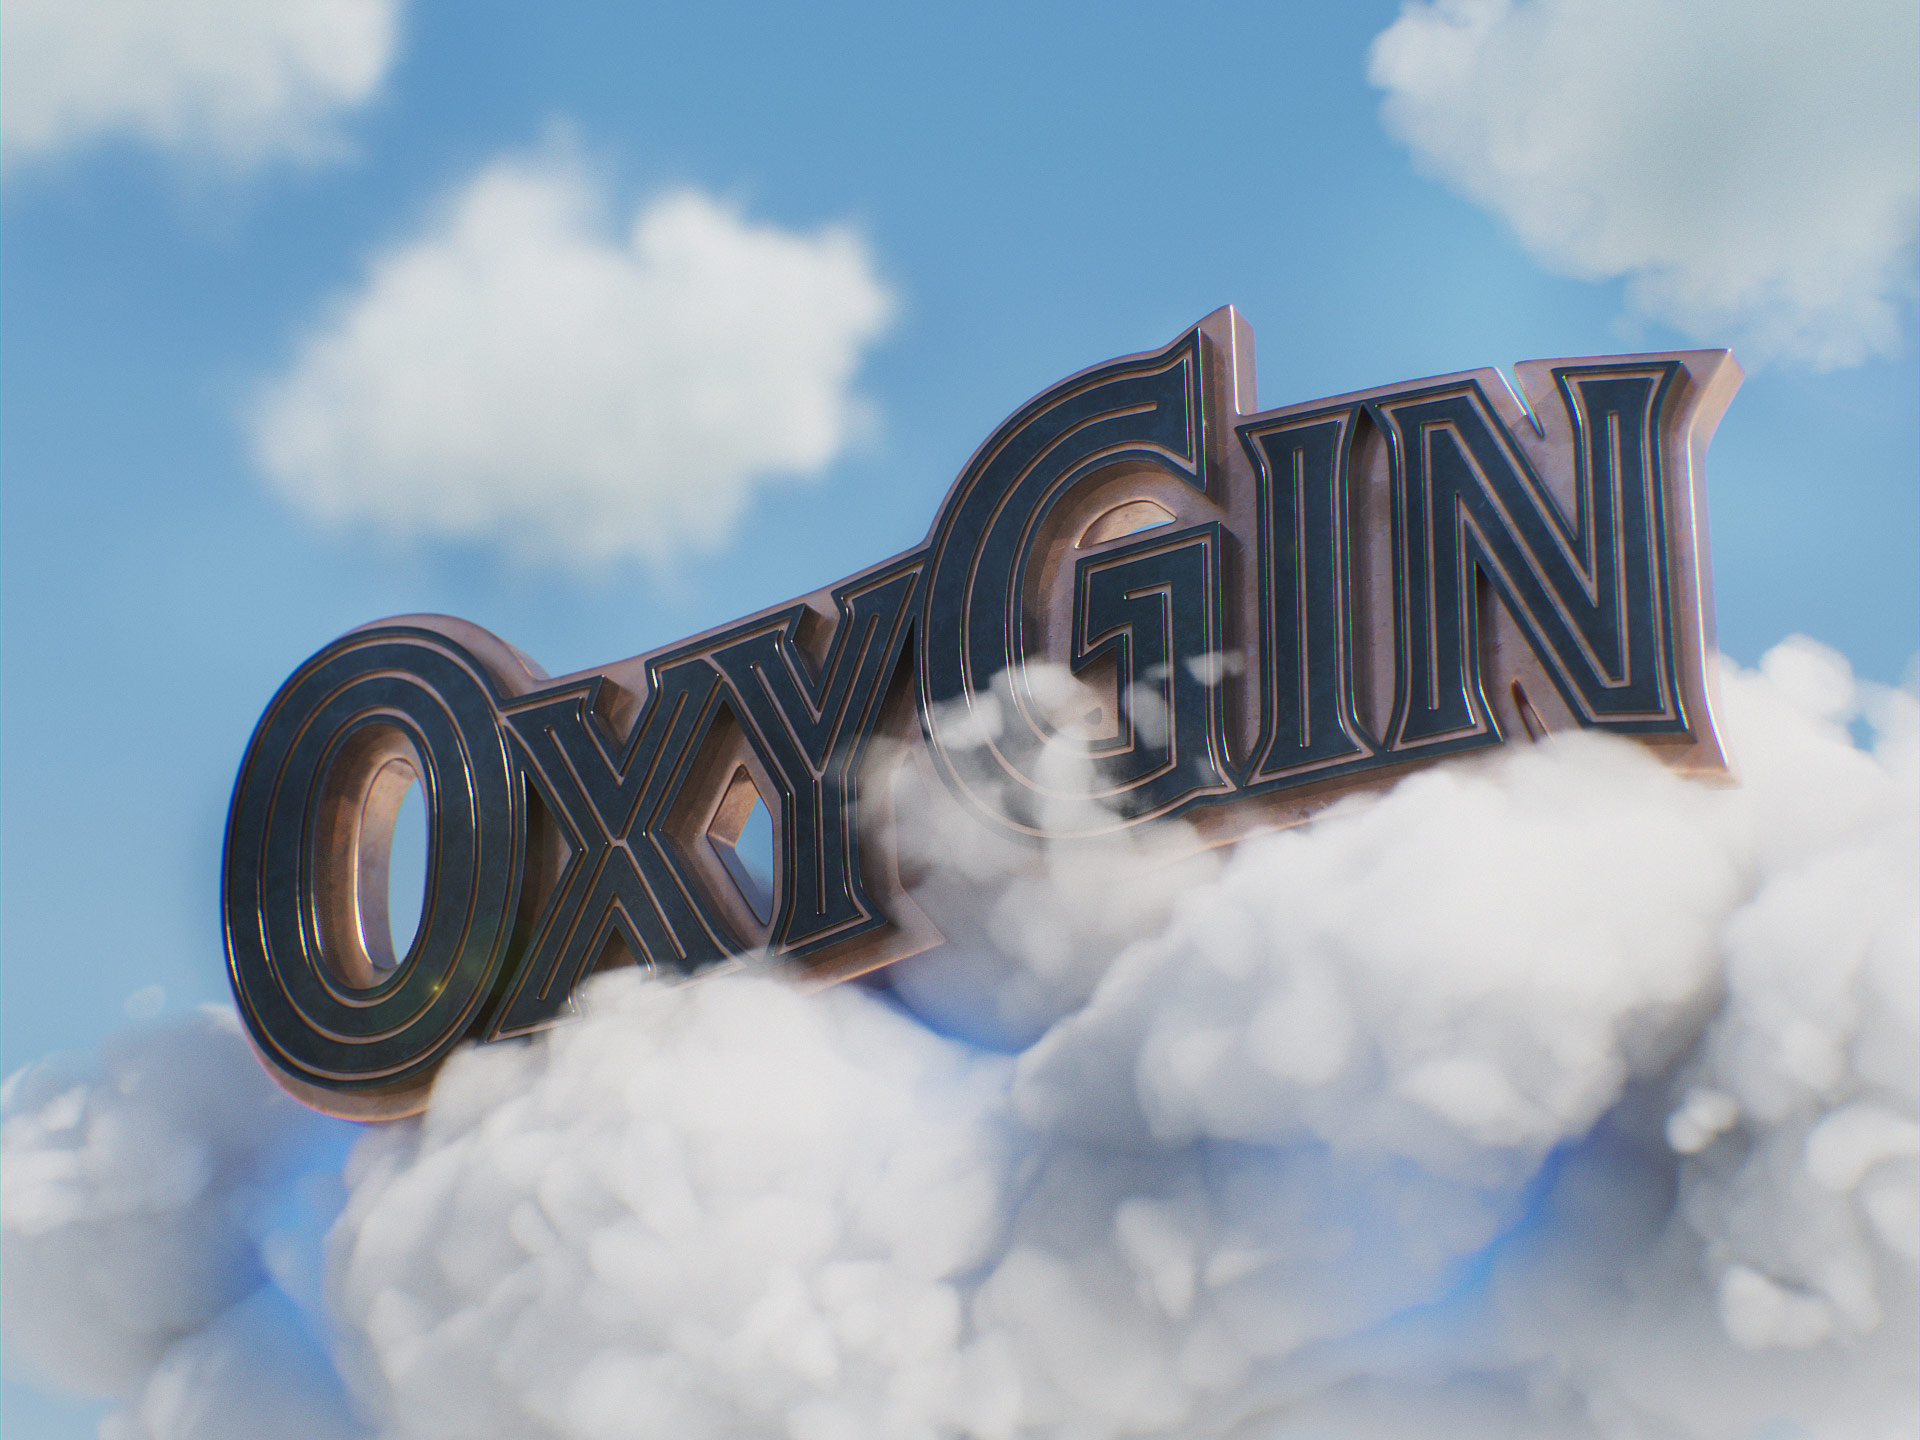 OxyGin image